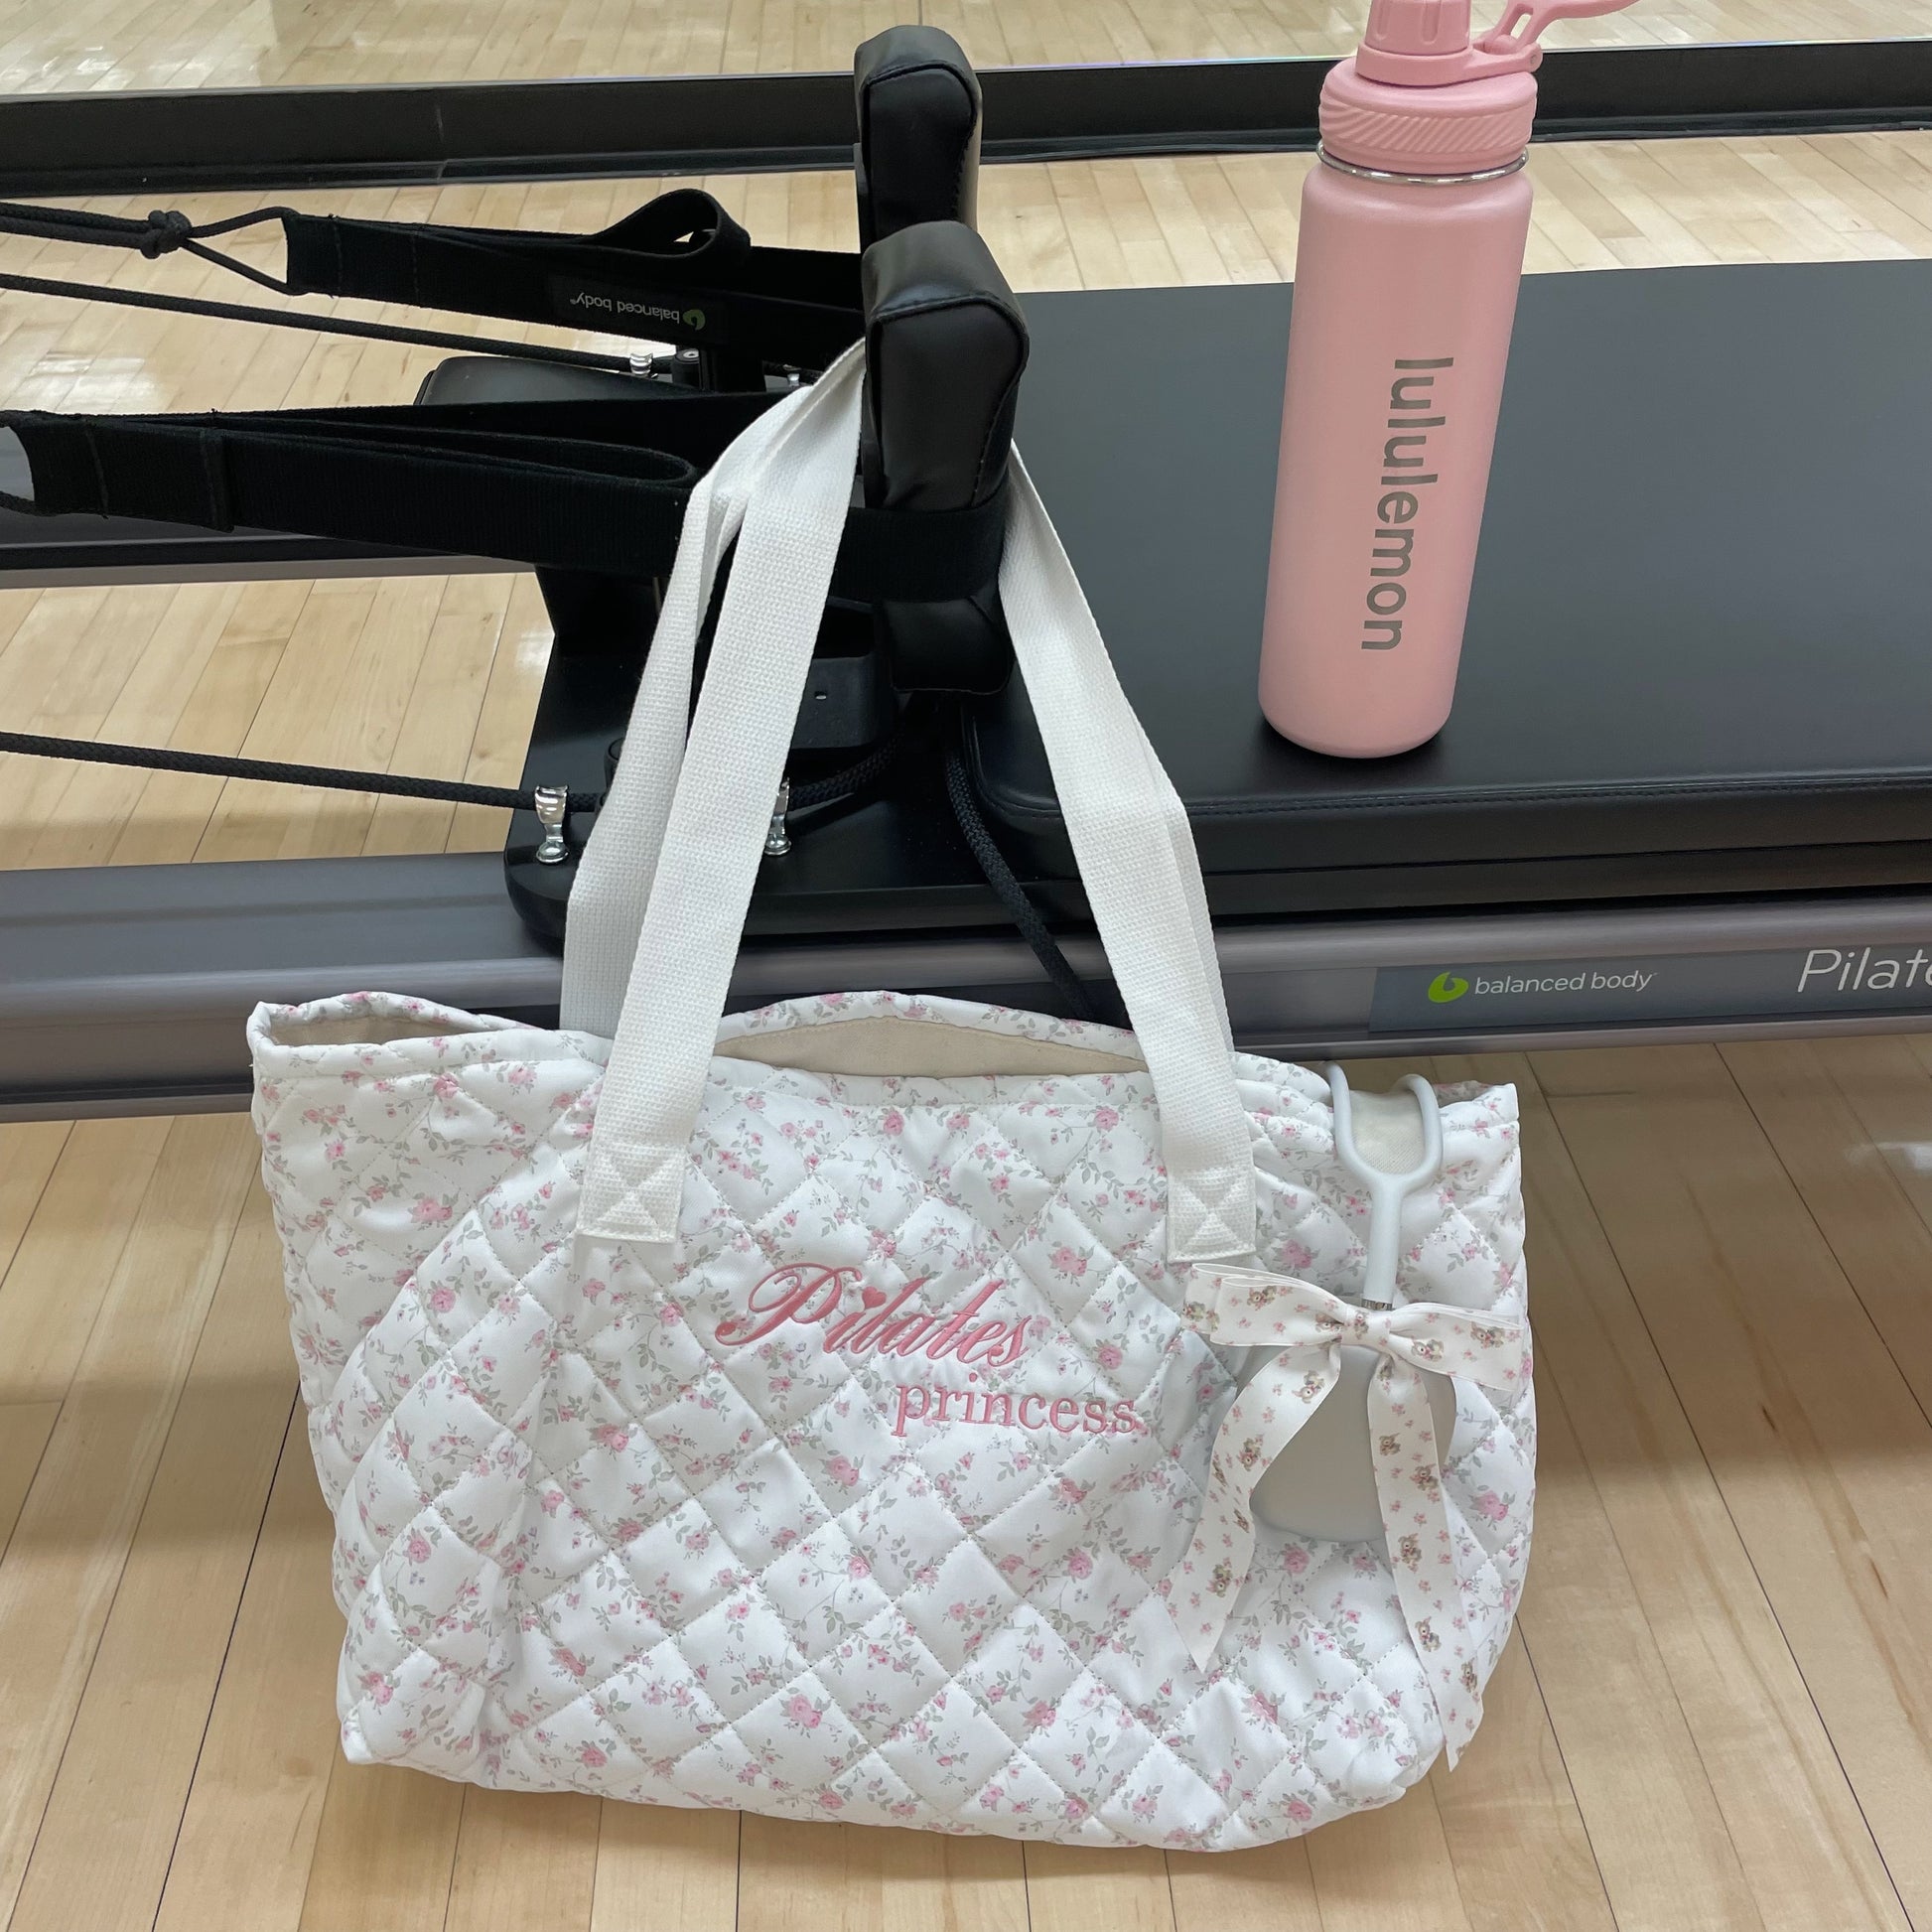 pilates princess tote bag – sweetly